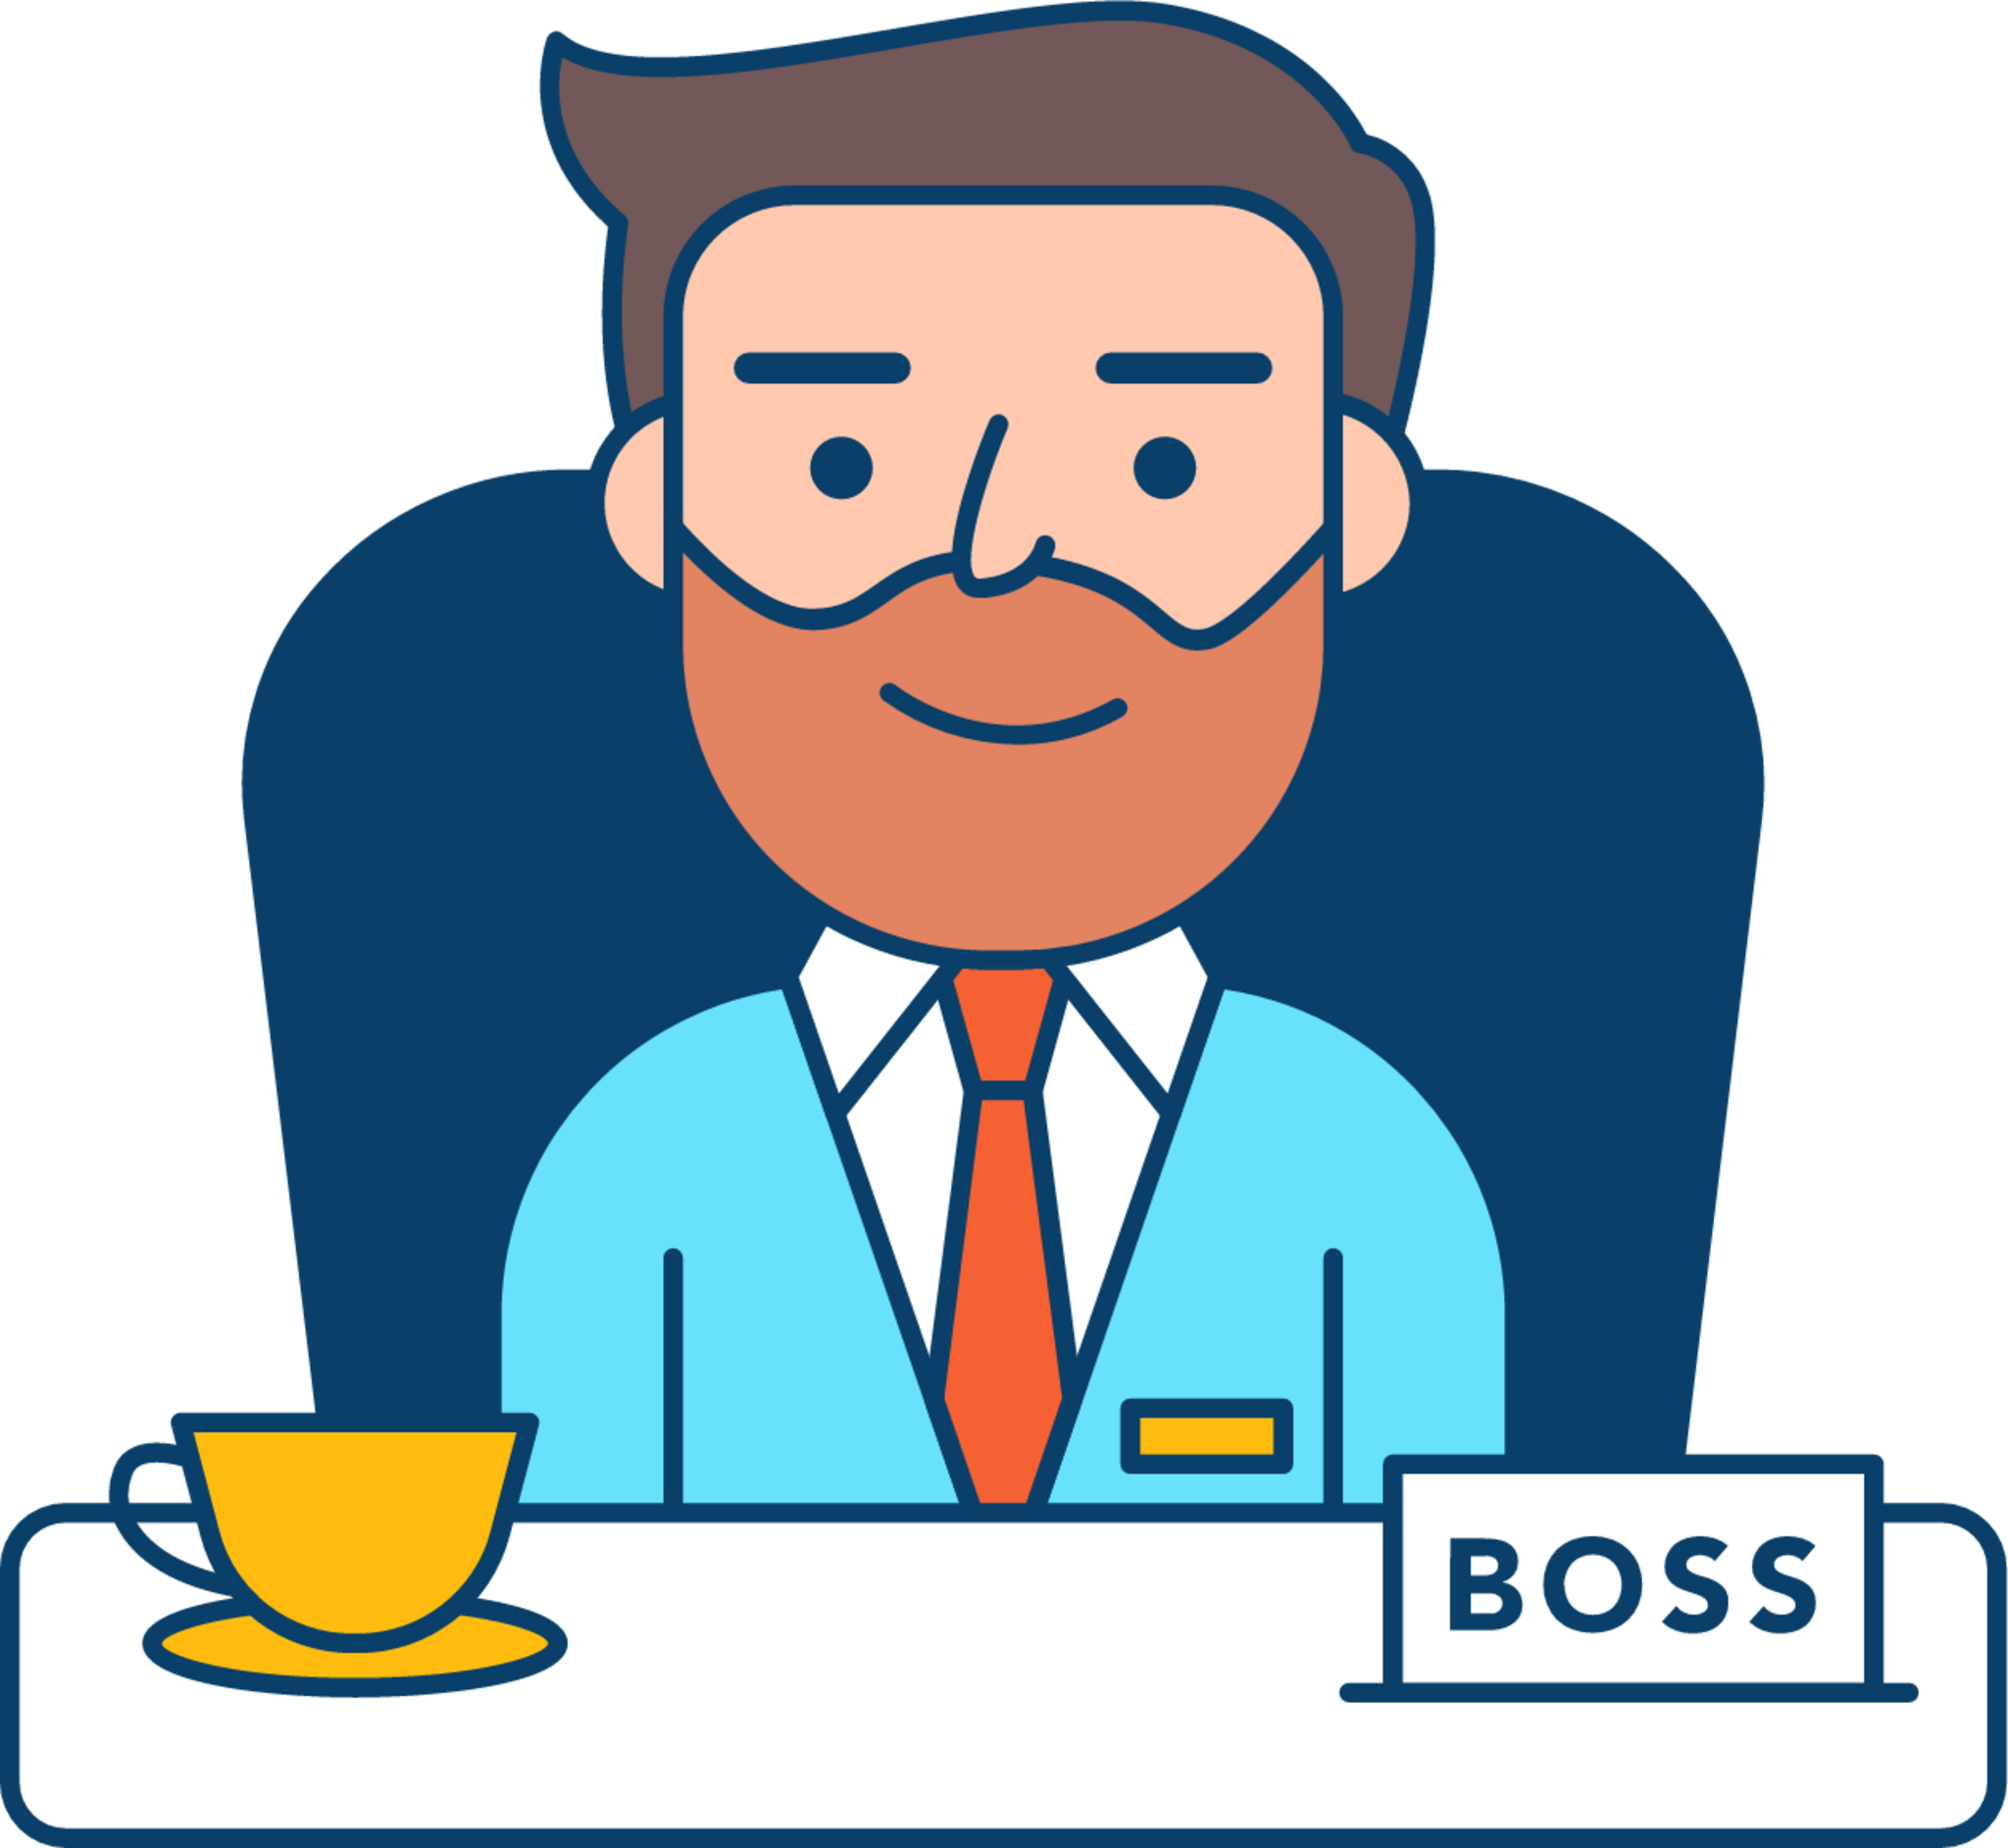 Boss illustration